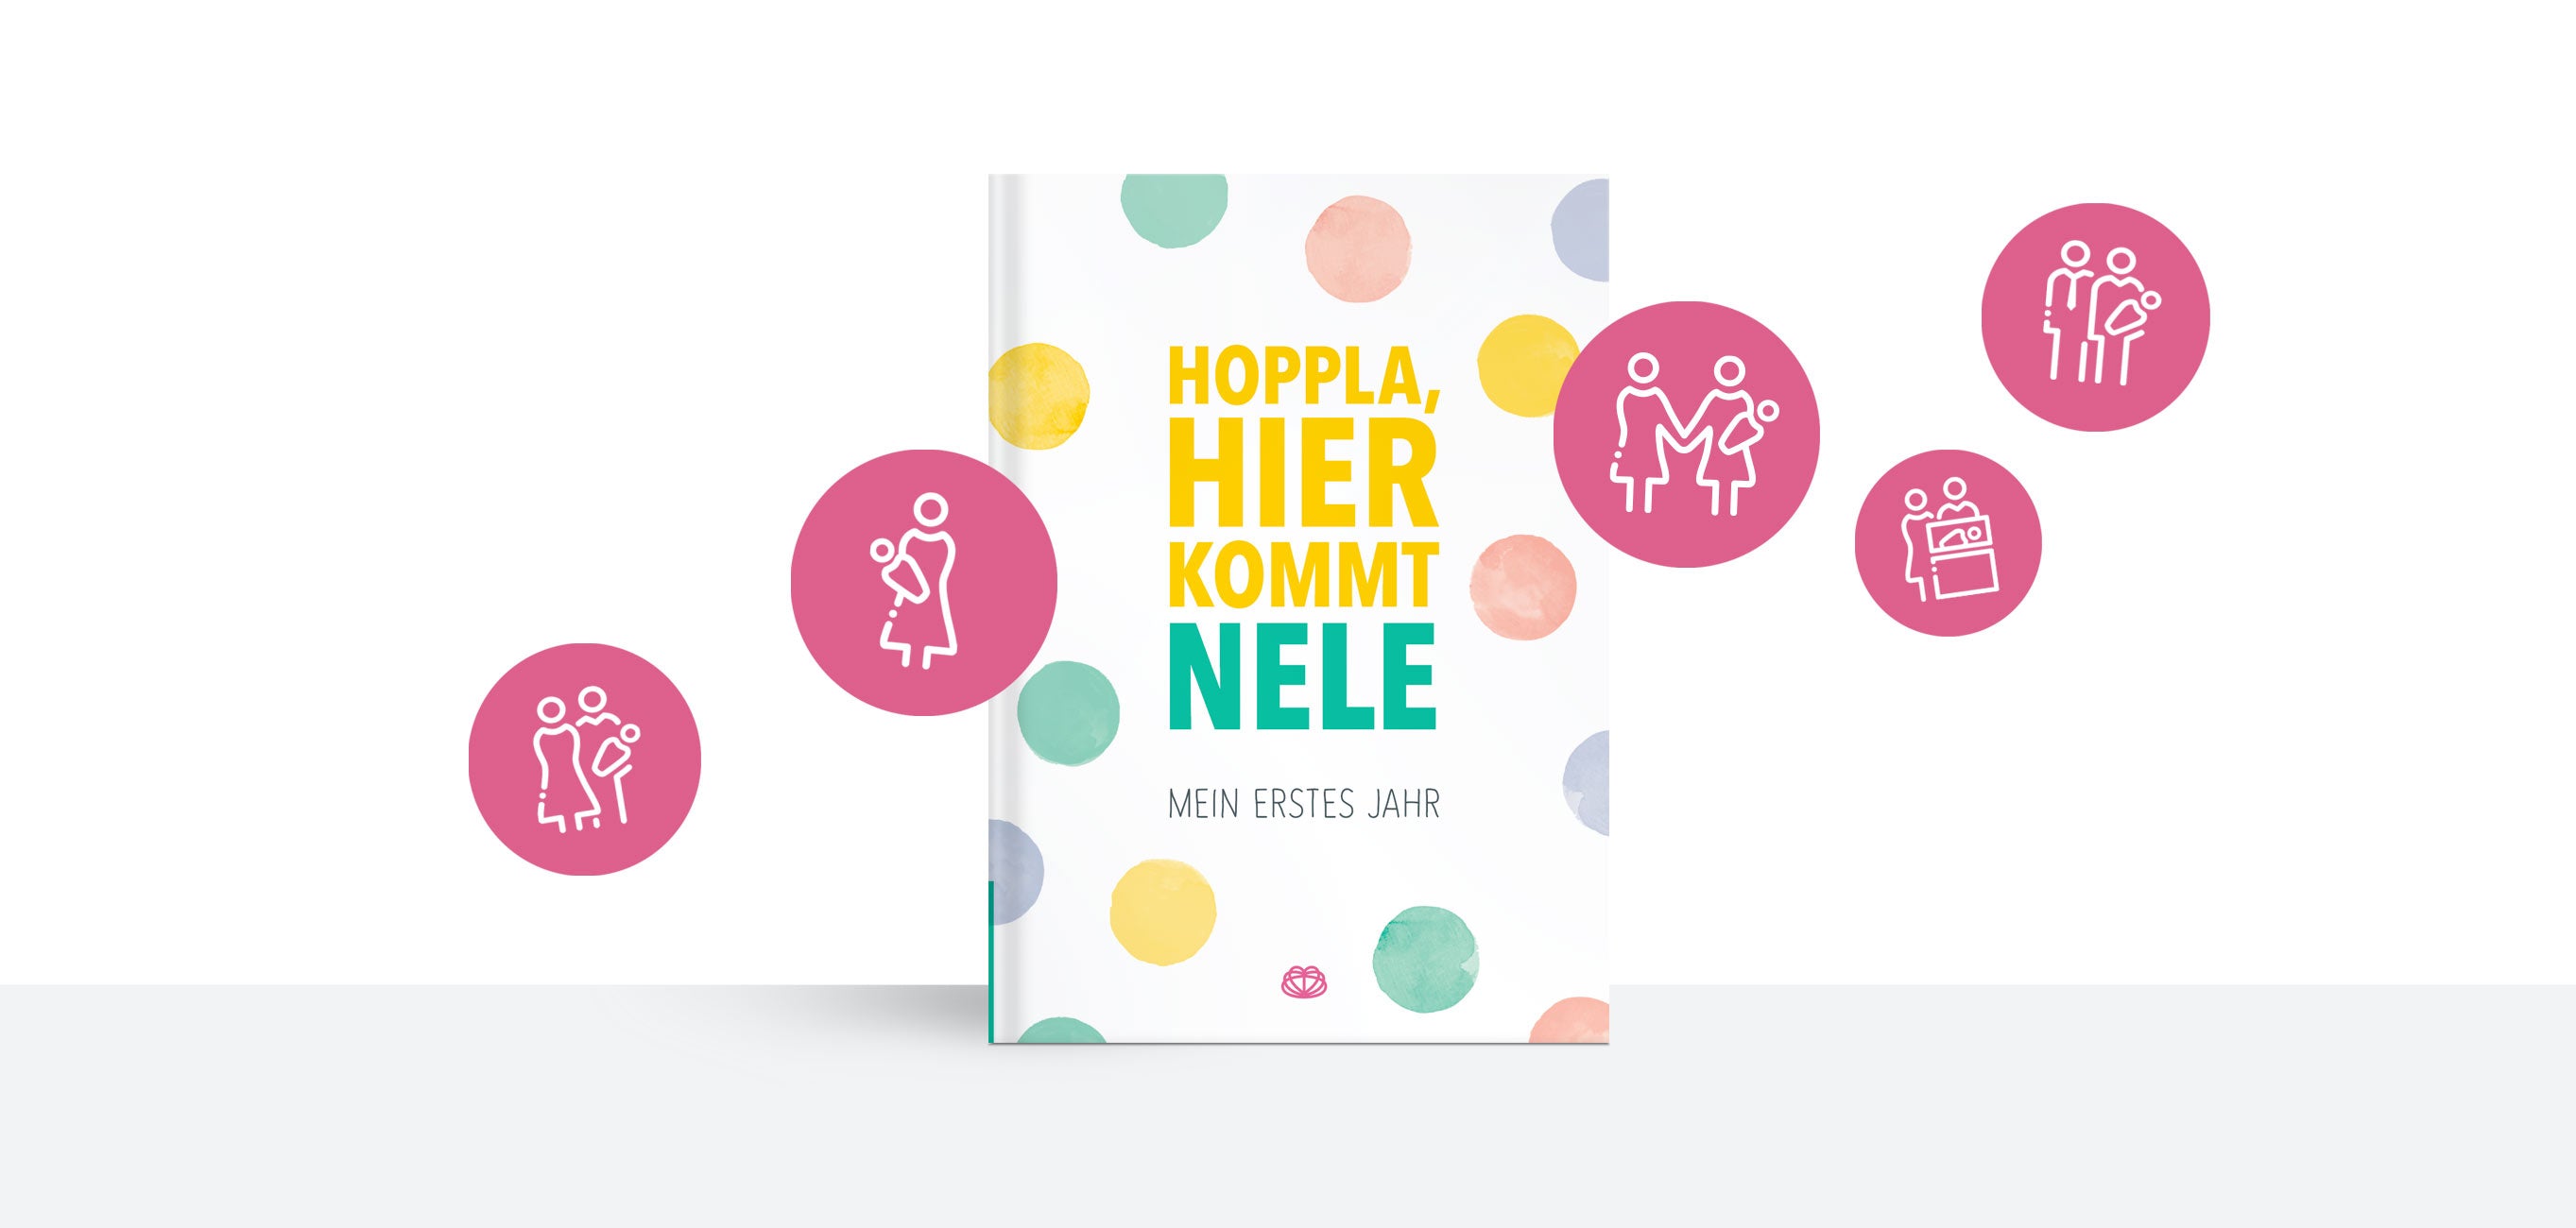 Themenbild personalisierte Babyalben - abgebildet ist das Album "Hoppla, hier kommt dein Baby" mit Symbolen für verschiedene Familienkonstellationen